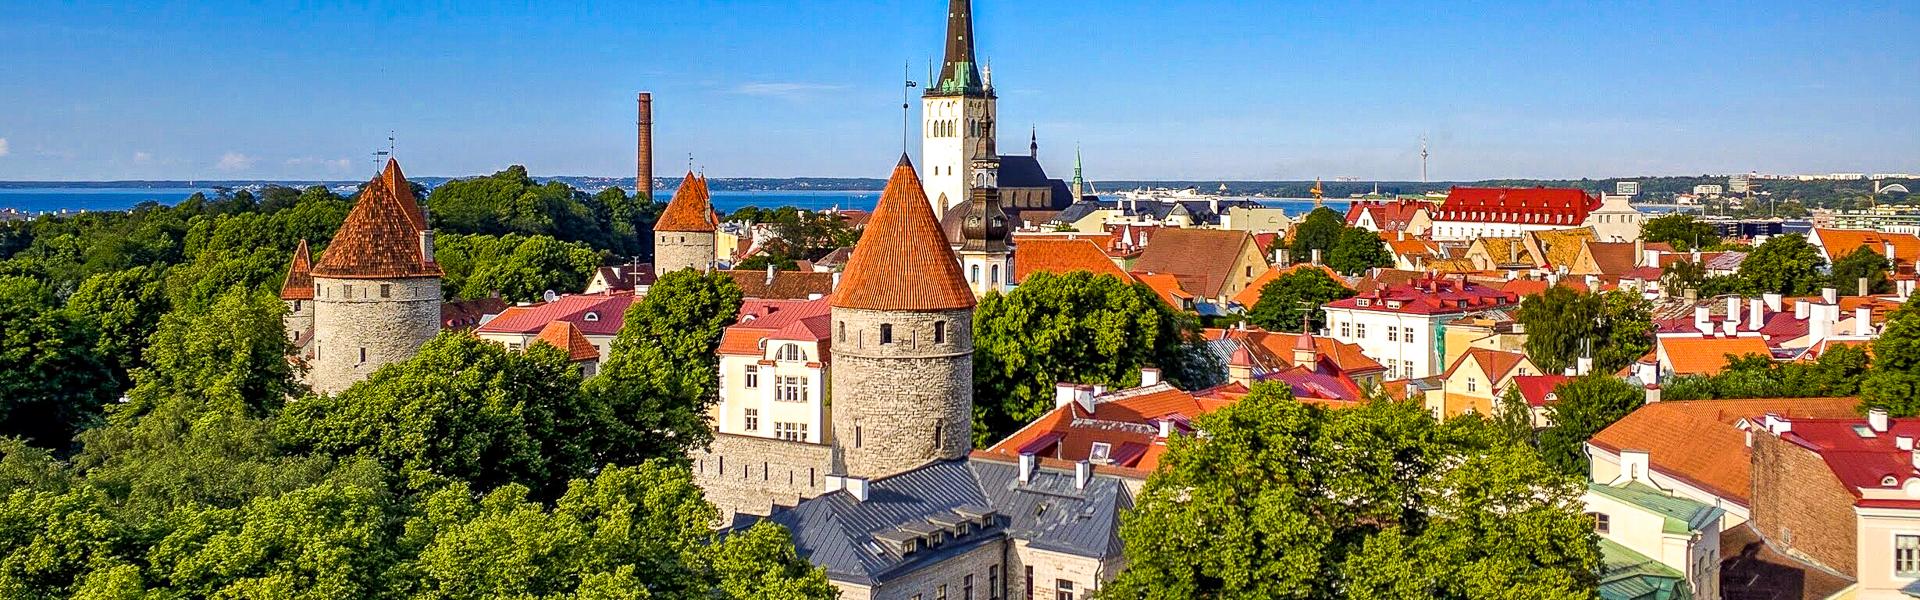 Trme der Altstadt von Tallinn |  Thomas Schwarz, Pixabay / Chamleon